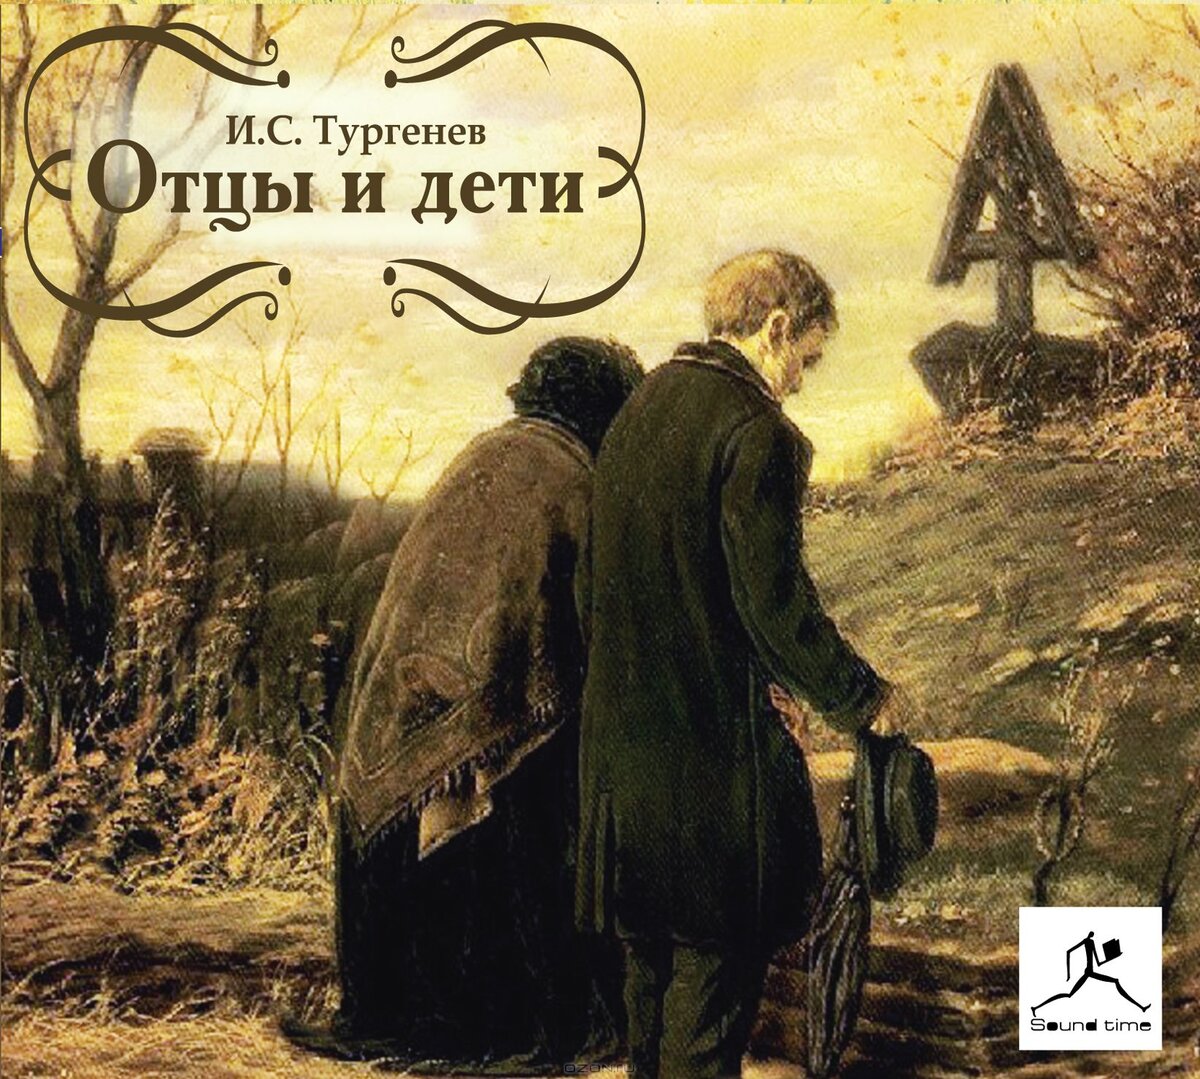 Обложка романа Тургенева отцы и дети